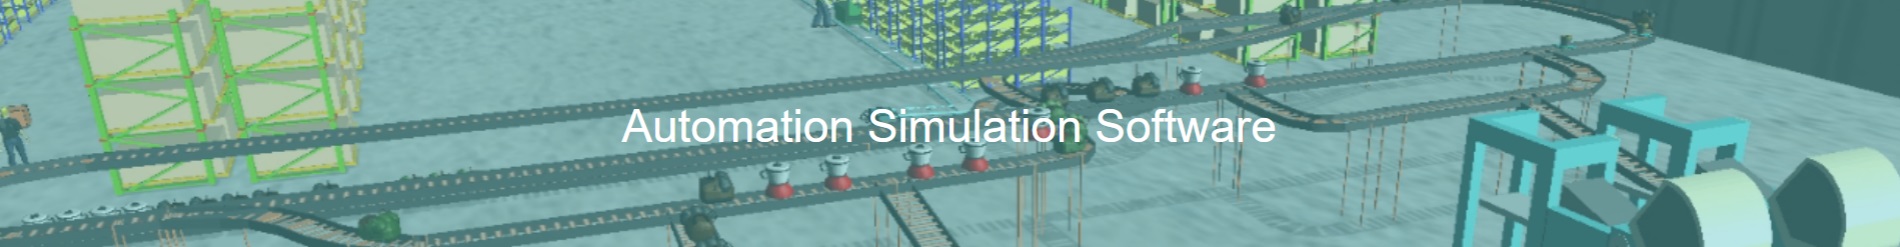 automation simulation - automation simulation software